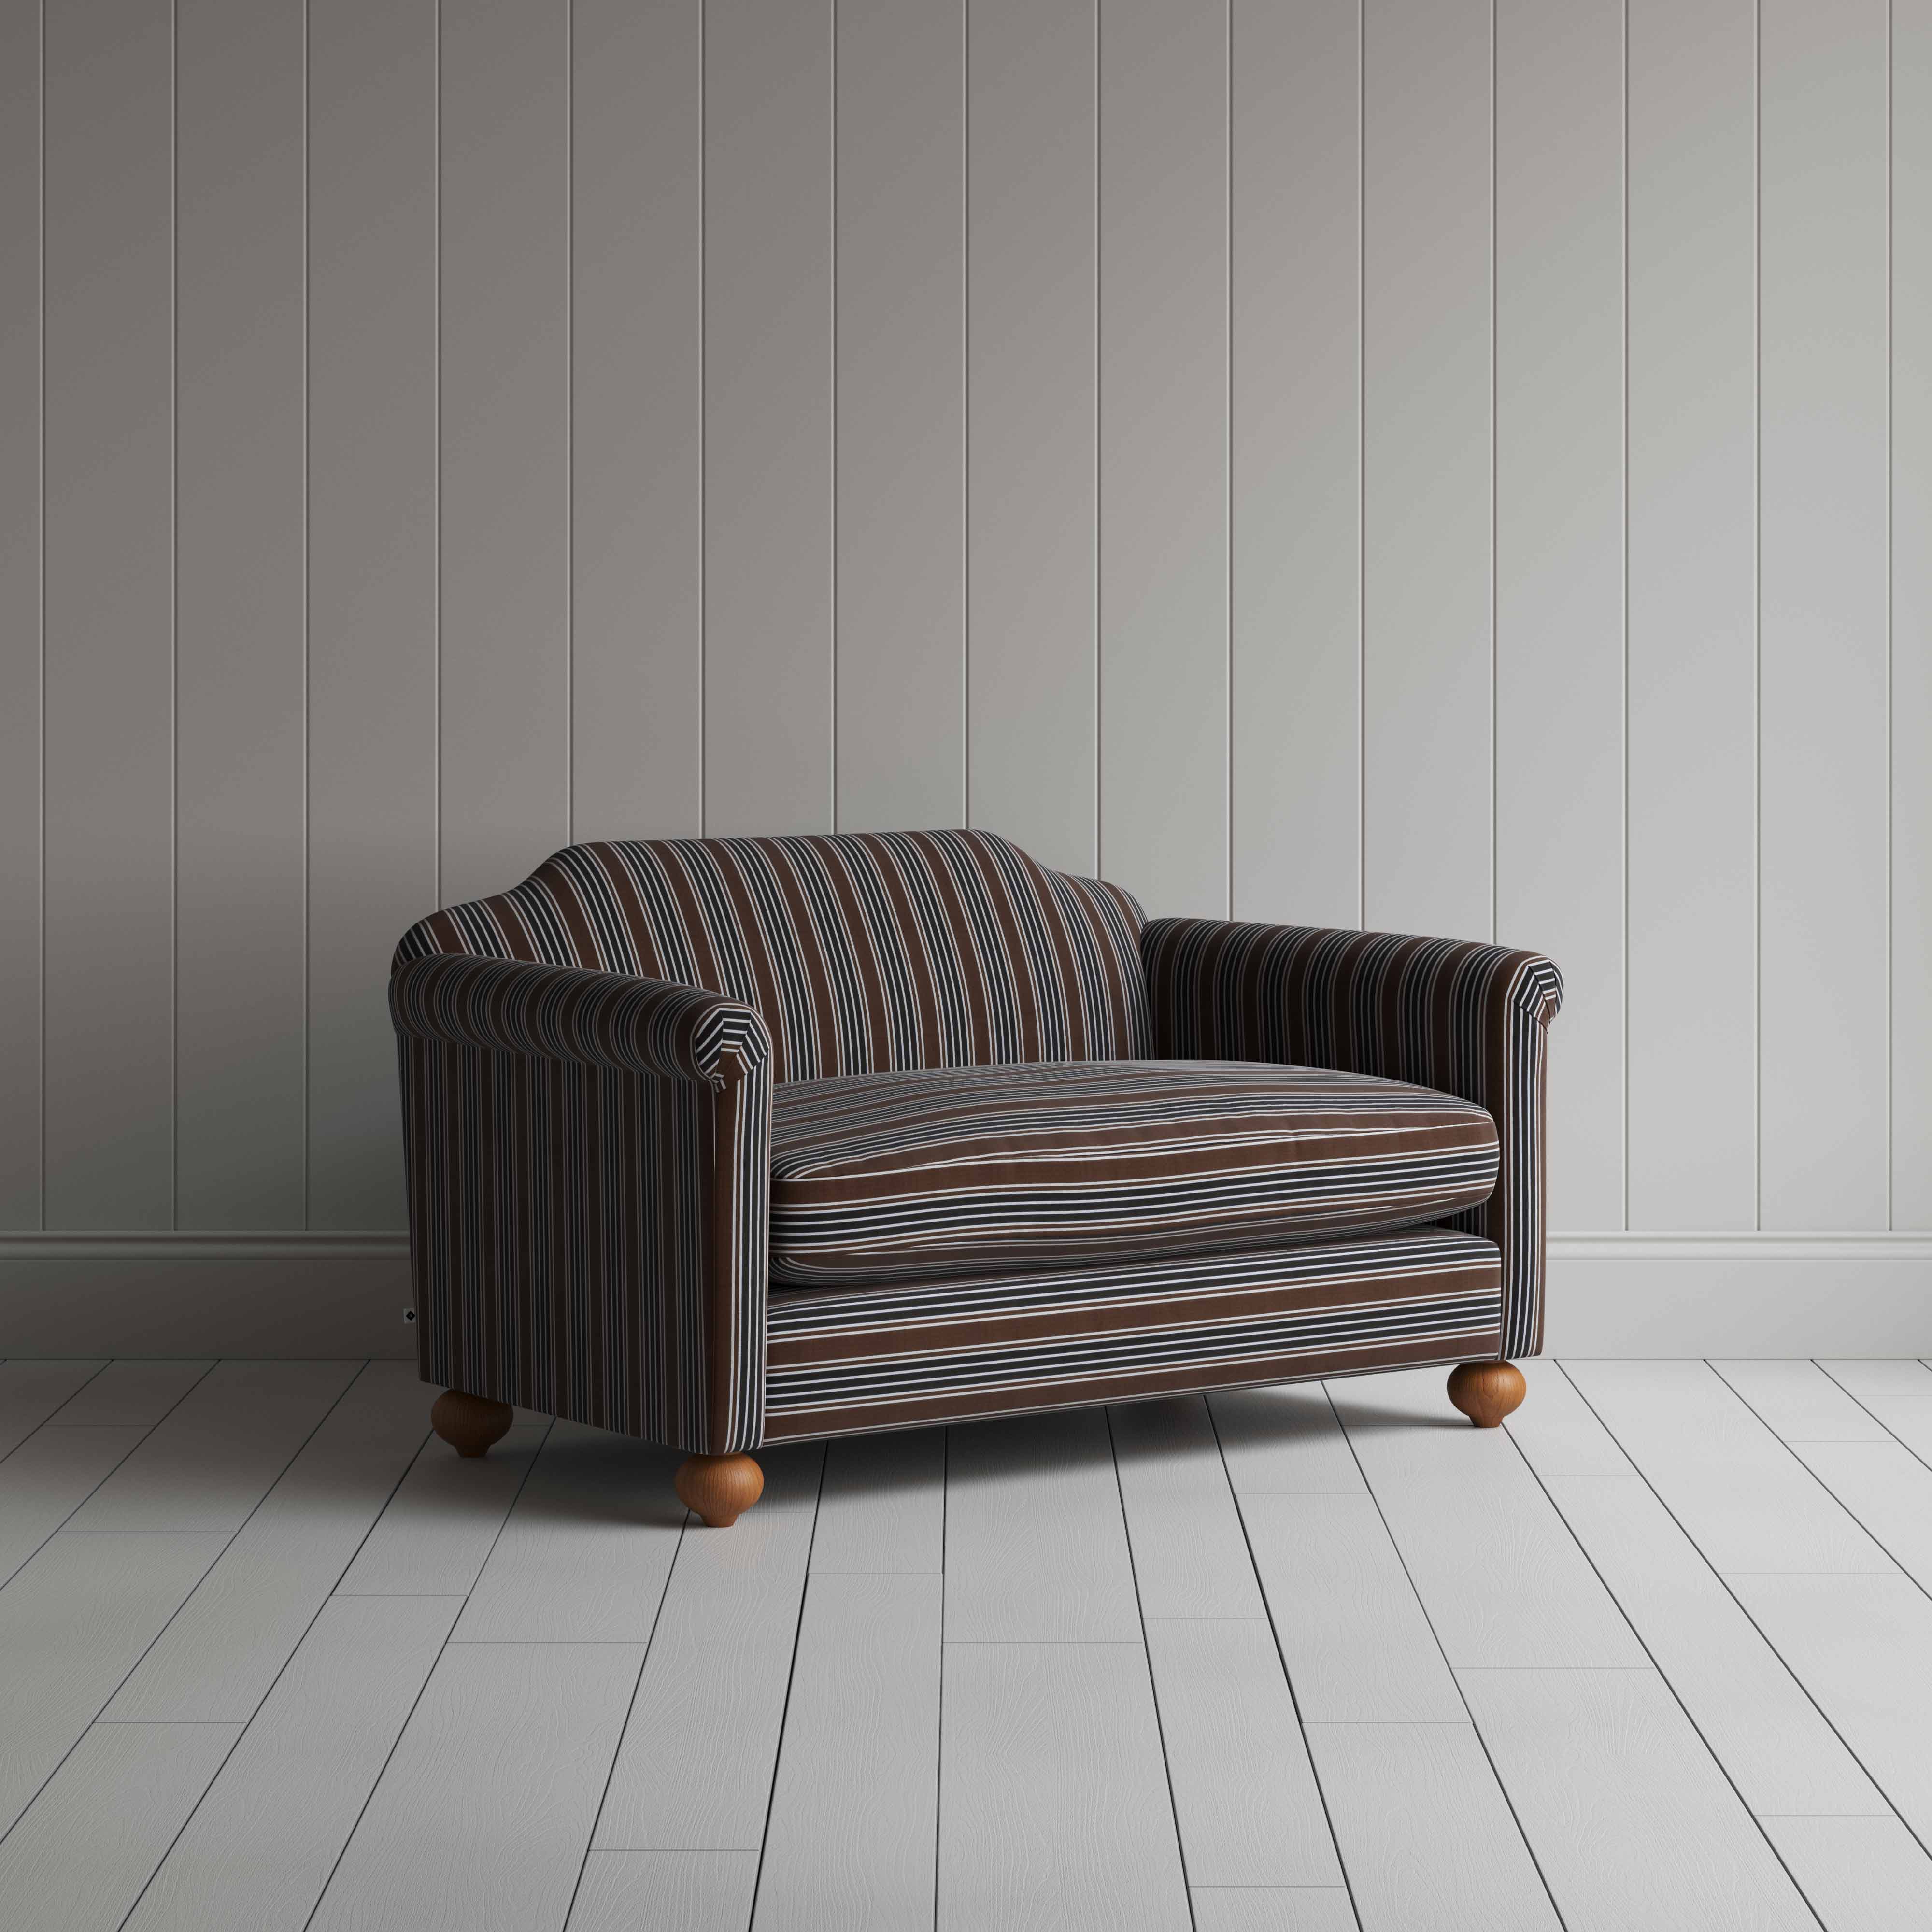  Dolittle 2 Seater Sofa in Regatta Cotton, Charcoal 